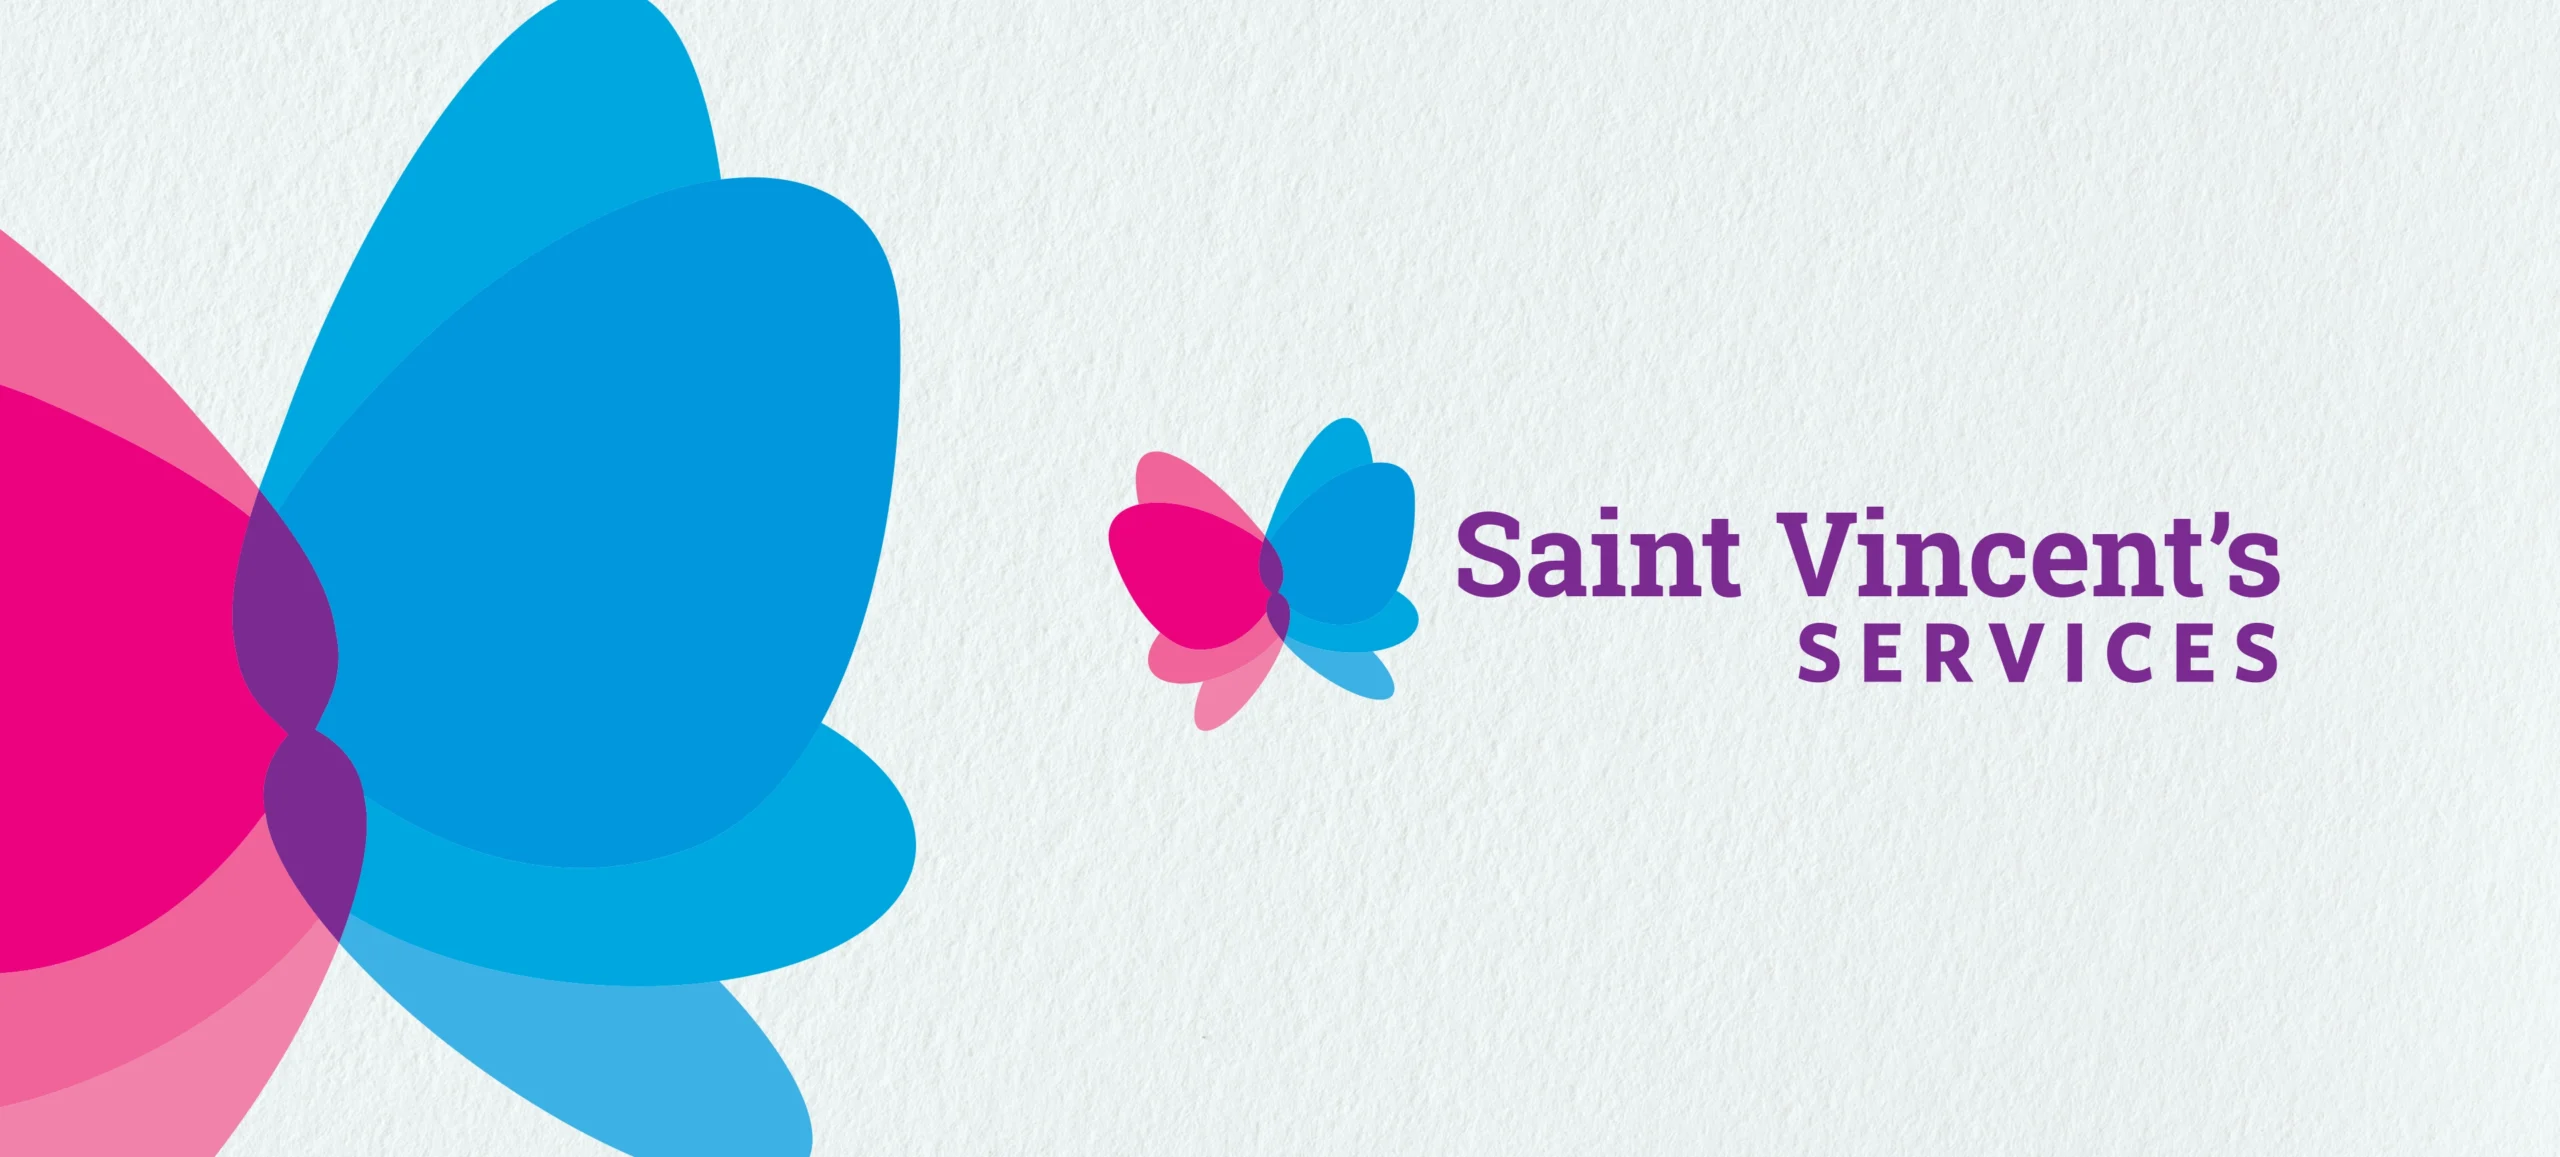 Saint Vincent's Services